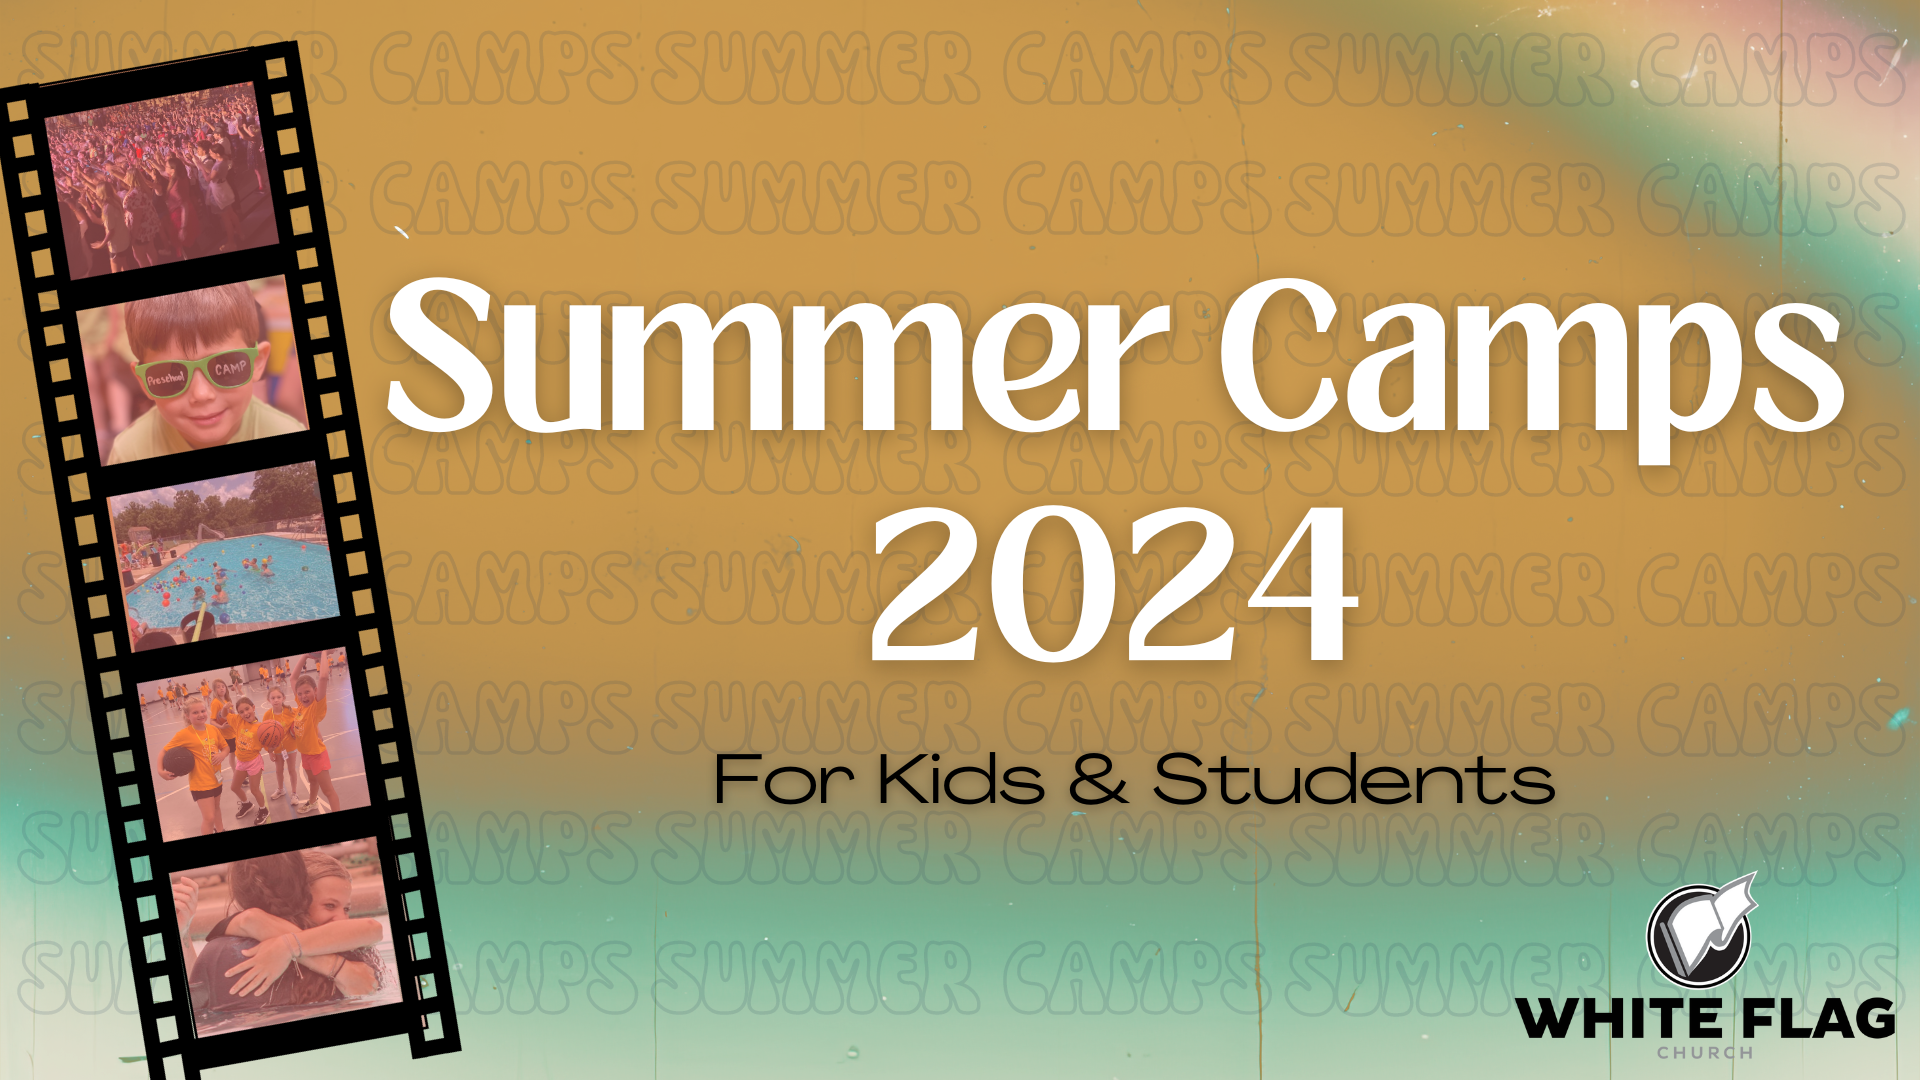 SUMMER CAMPS SUMMPER CAMPS SUMMER CAMPS SUMMER CAMPS SUMMER CAMPS SUMMER CAMPS SUMMER CAMPS SUMMER C